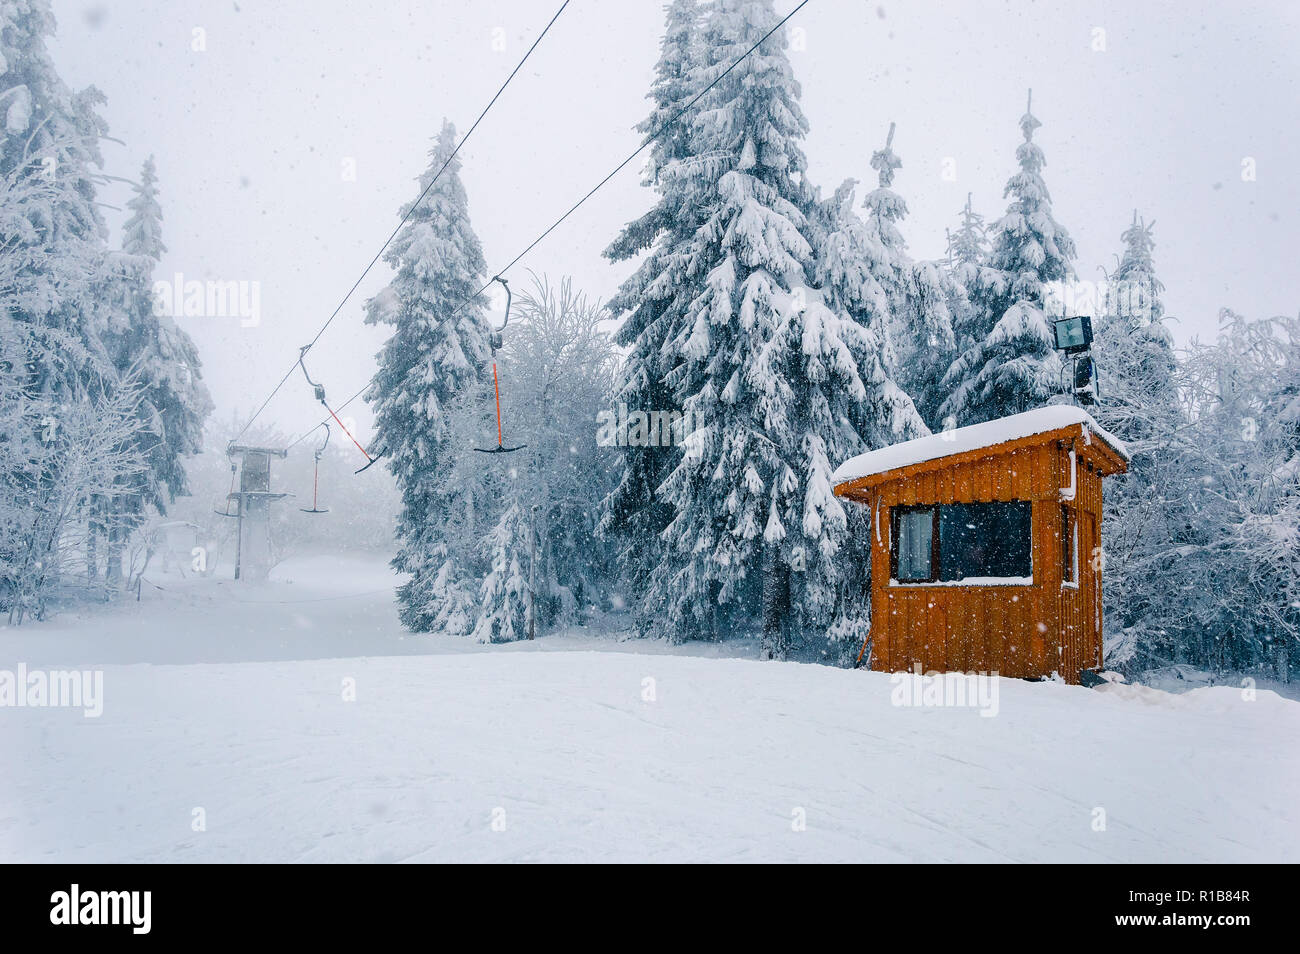 Snowy ski area: svuotare T-bar ascensore e cabine in legno a cattivo tempo invernale con neve, vento e nebbia Foto Stock